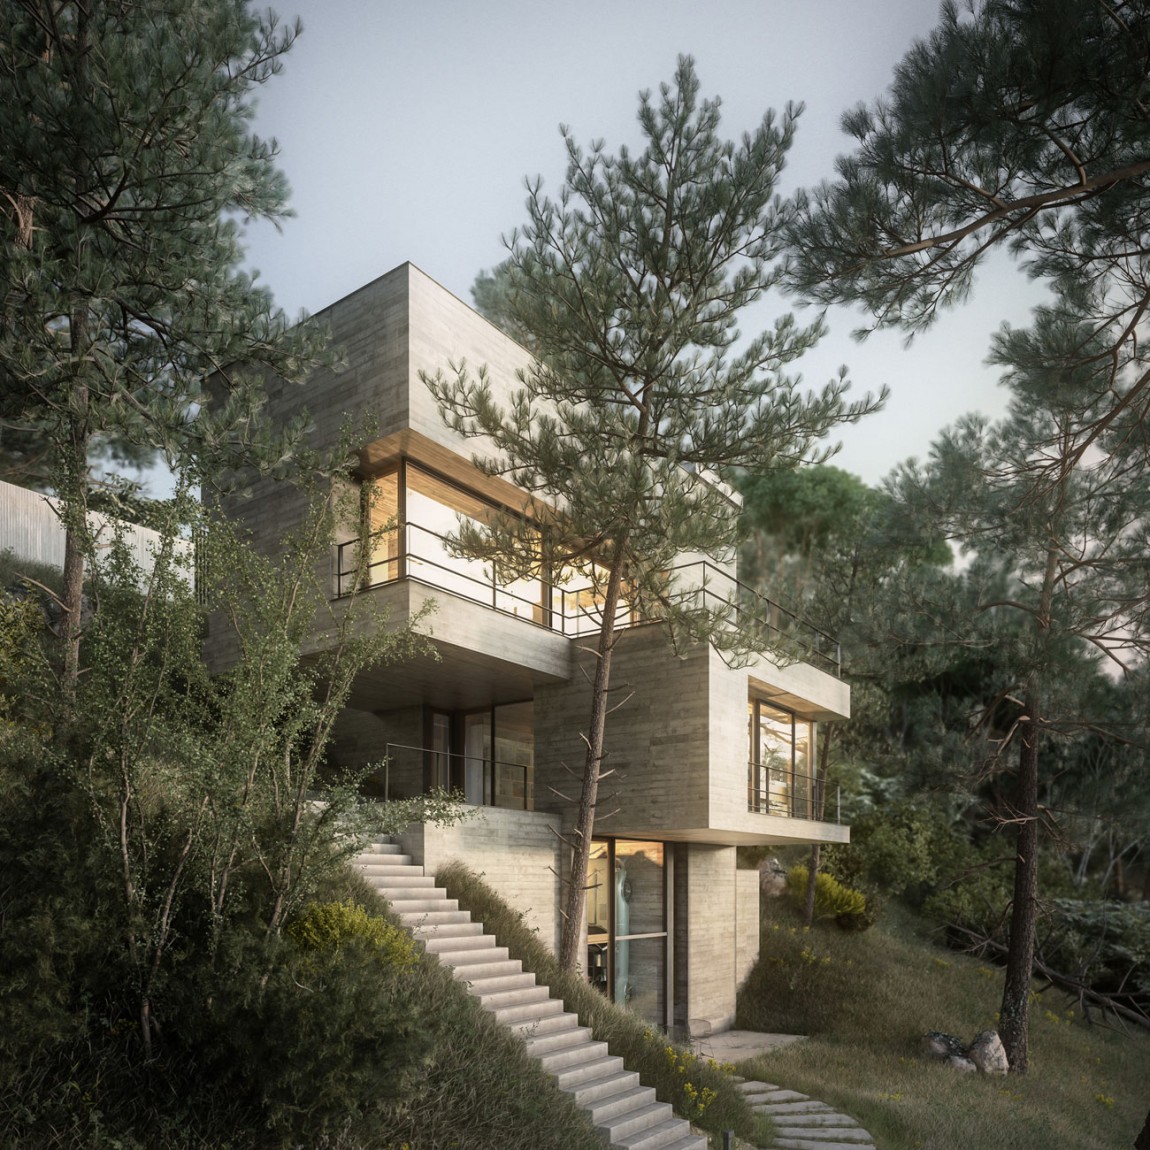 Wunderschönes Haus inmitten von Natur  by Design Raum 2